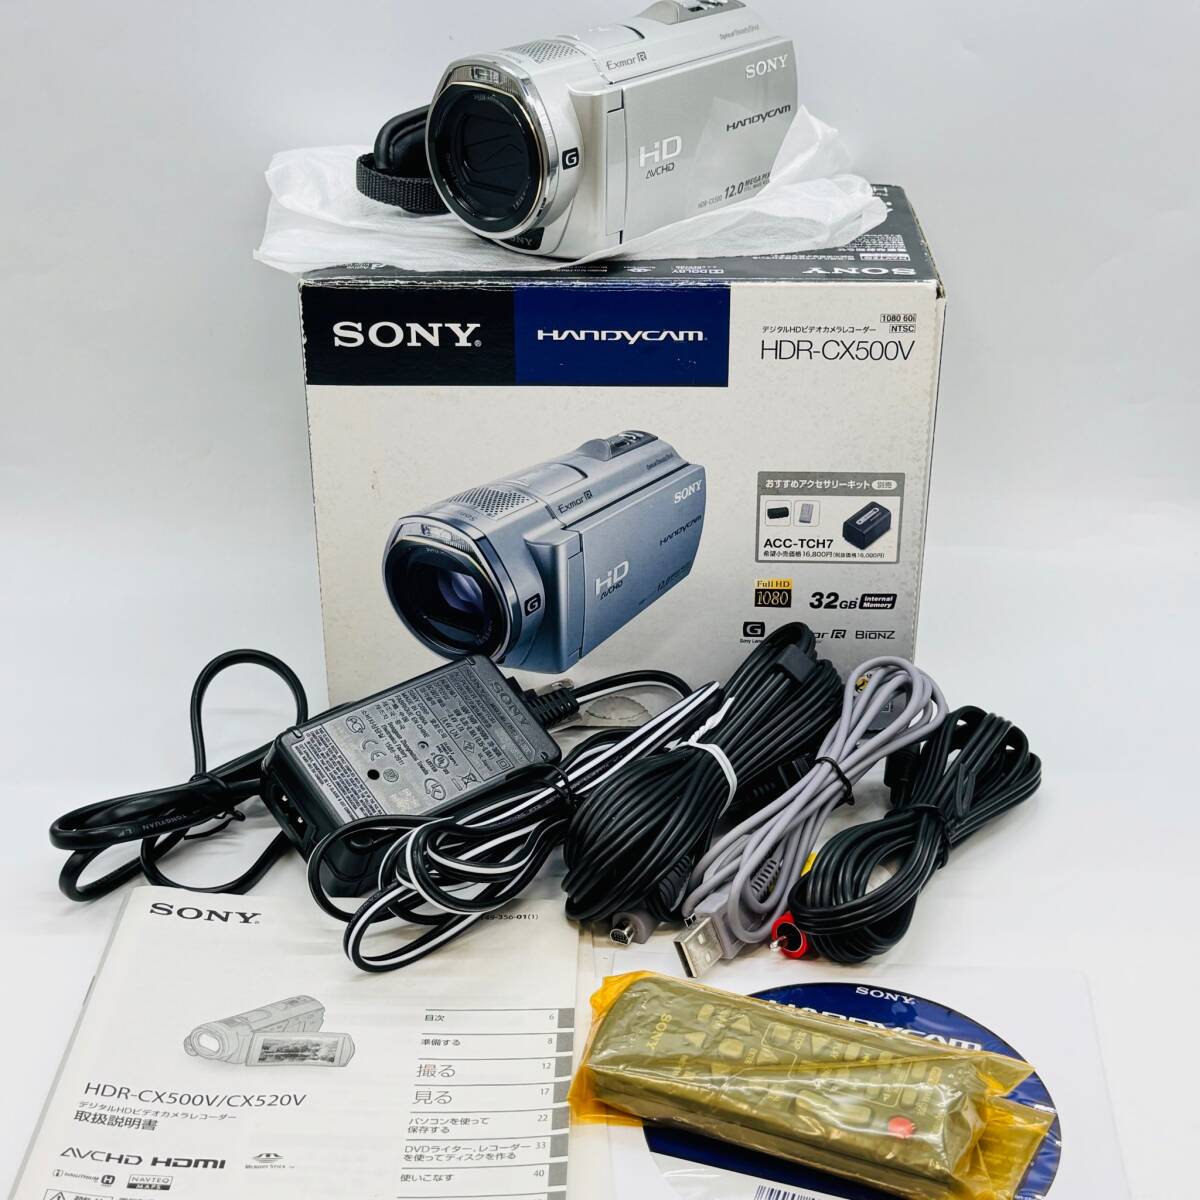 SONY HDR-CX500V цифровой HD видео камера магнитофон электризация 0 6659 1 иен лот Sony маленький размер работа товар фотосъемка дешевый серебряный принадлежности имеется Handycam 